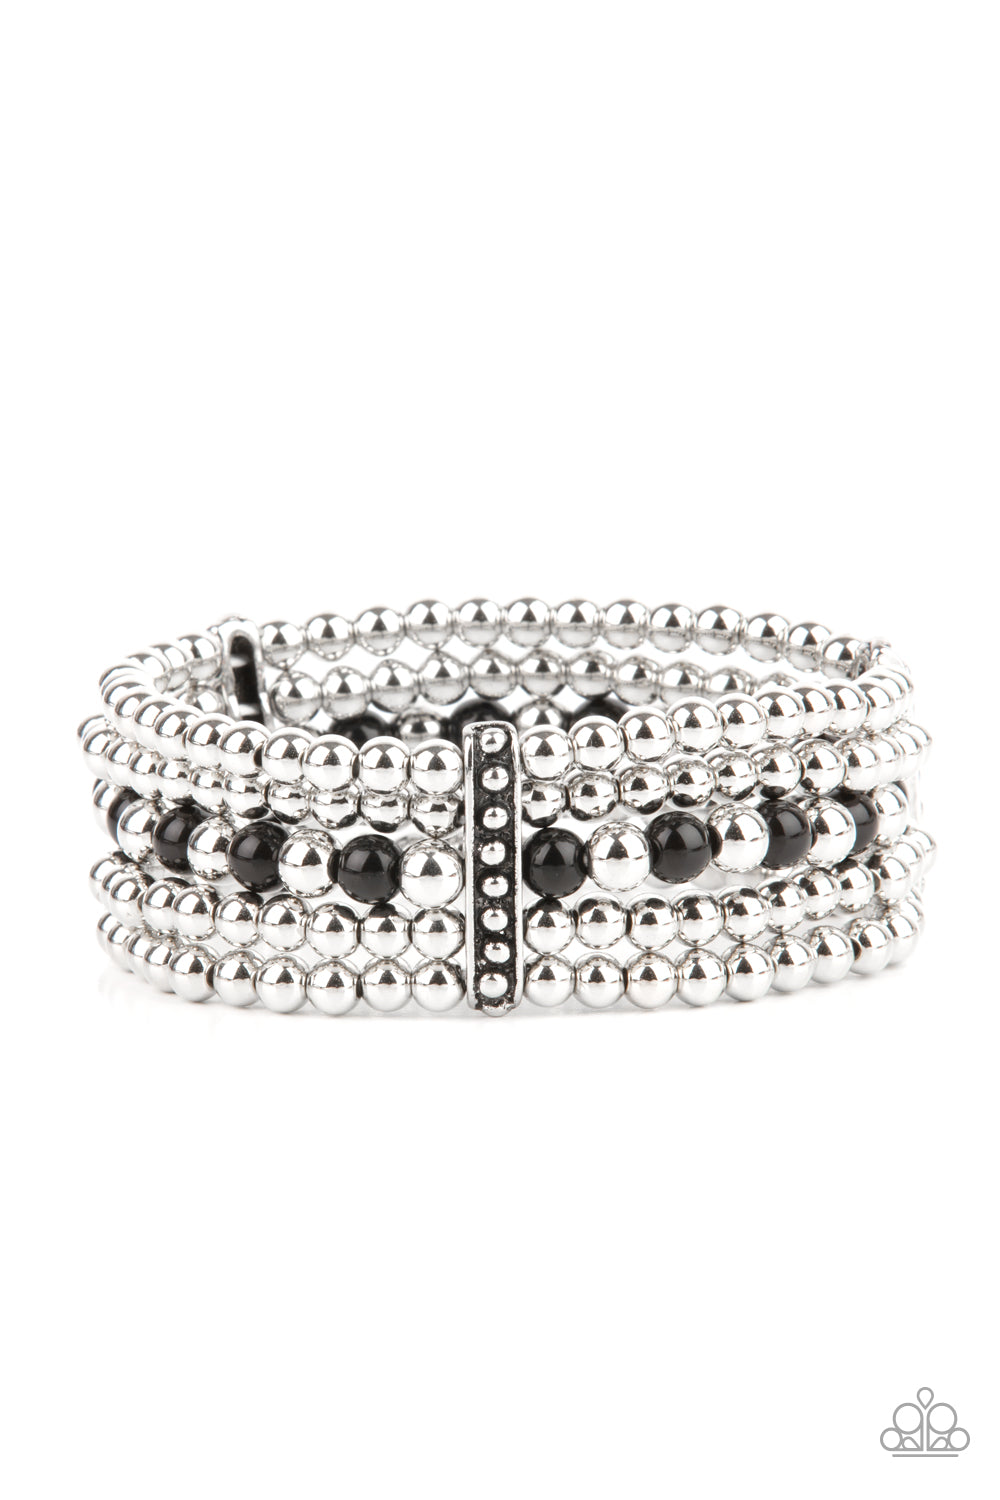 silver, silver jewelry, bracelet, stretchy bracelet, stretch bracelet, stackable bracelet, affordable jewelry, paparazzi accessories 